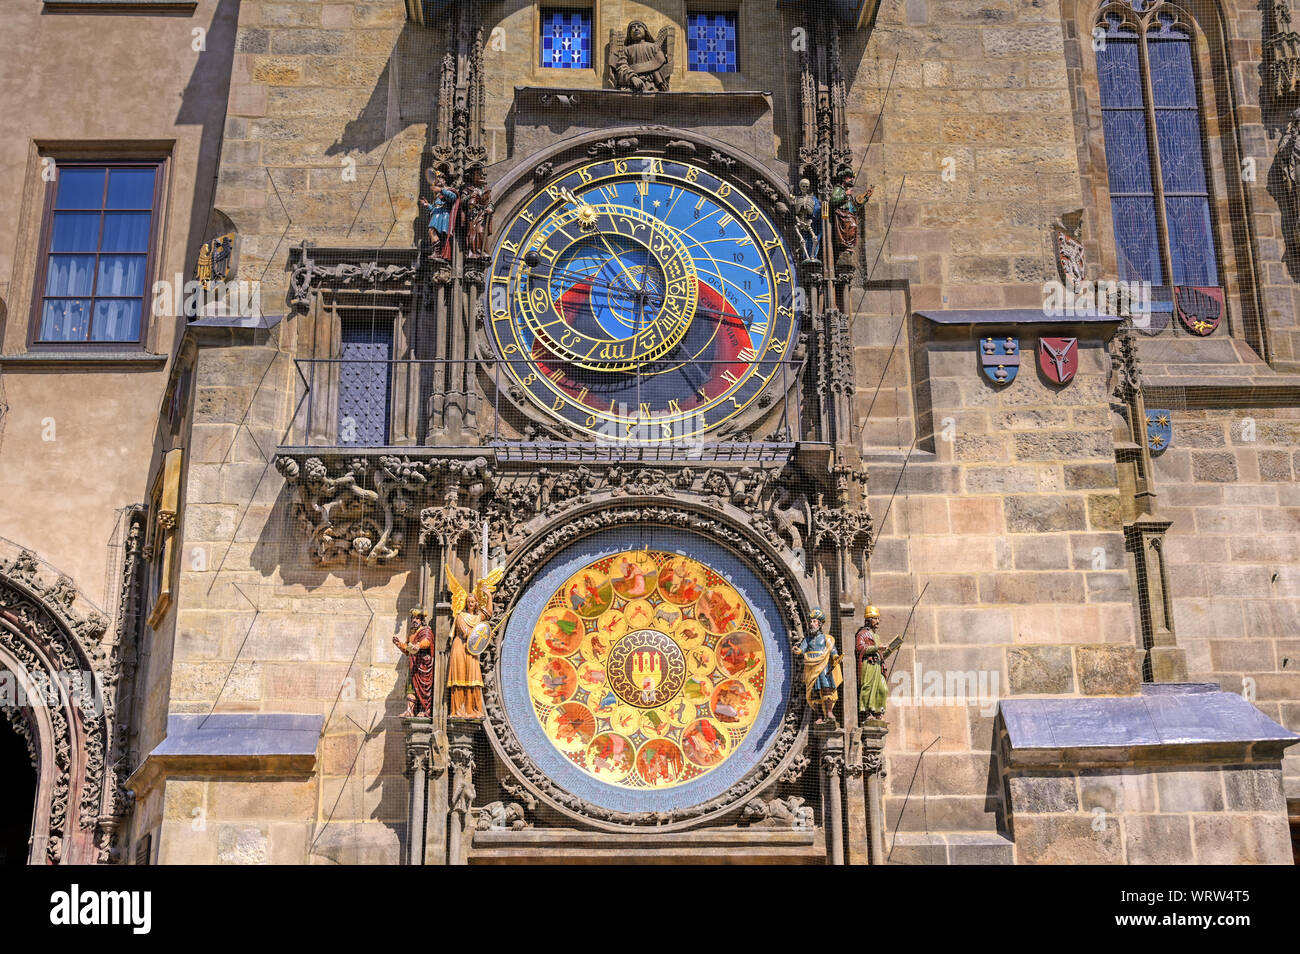 El Reloj Astronómico de Praga situado en el Ayuntamiento de la Ciudad Vieja en Praga, República Checa. Foto de stock